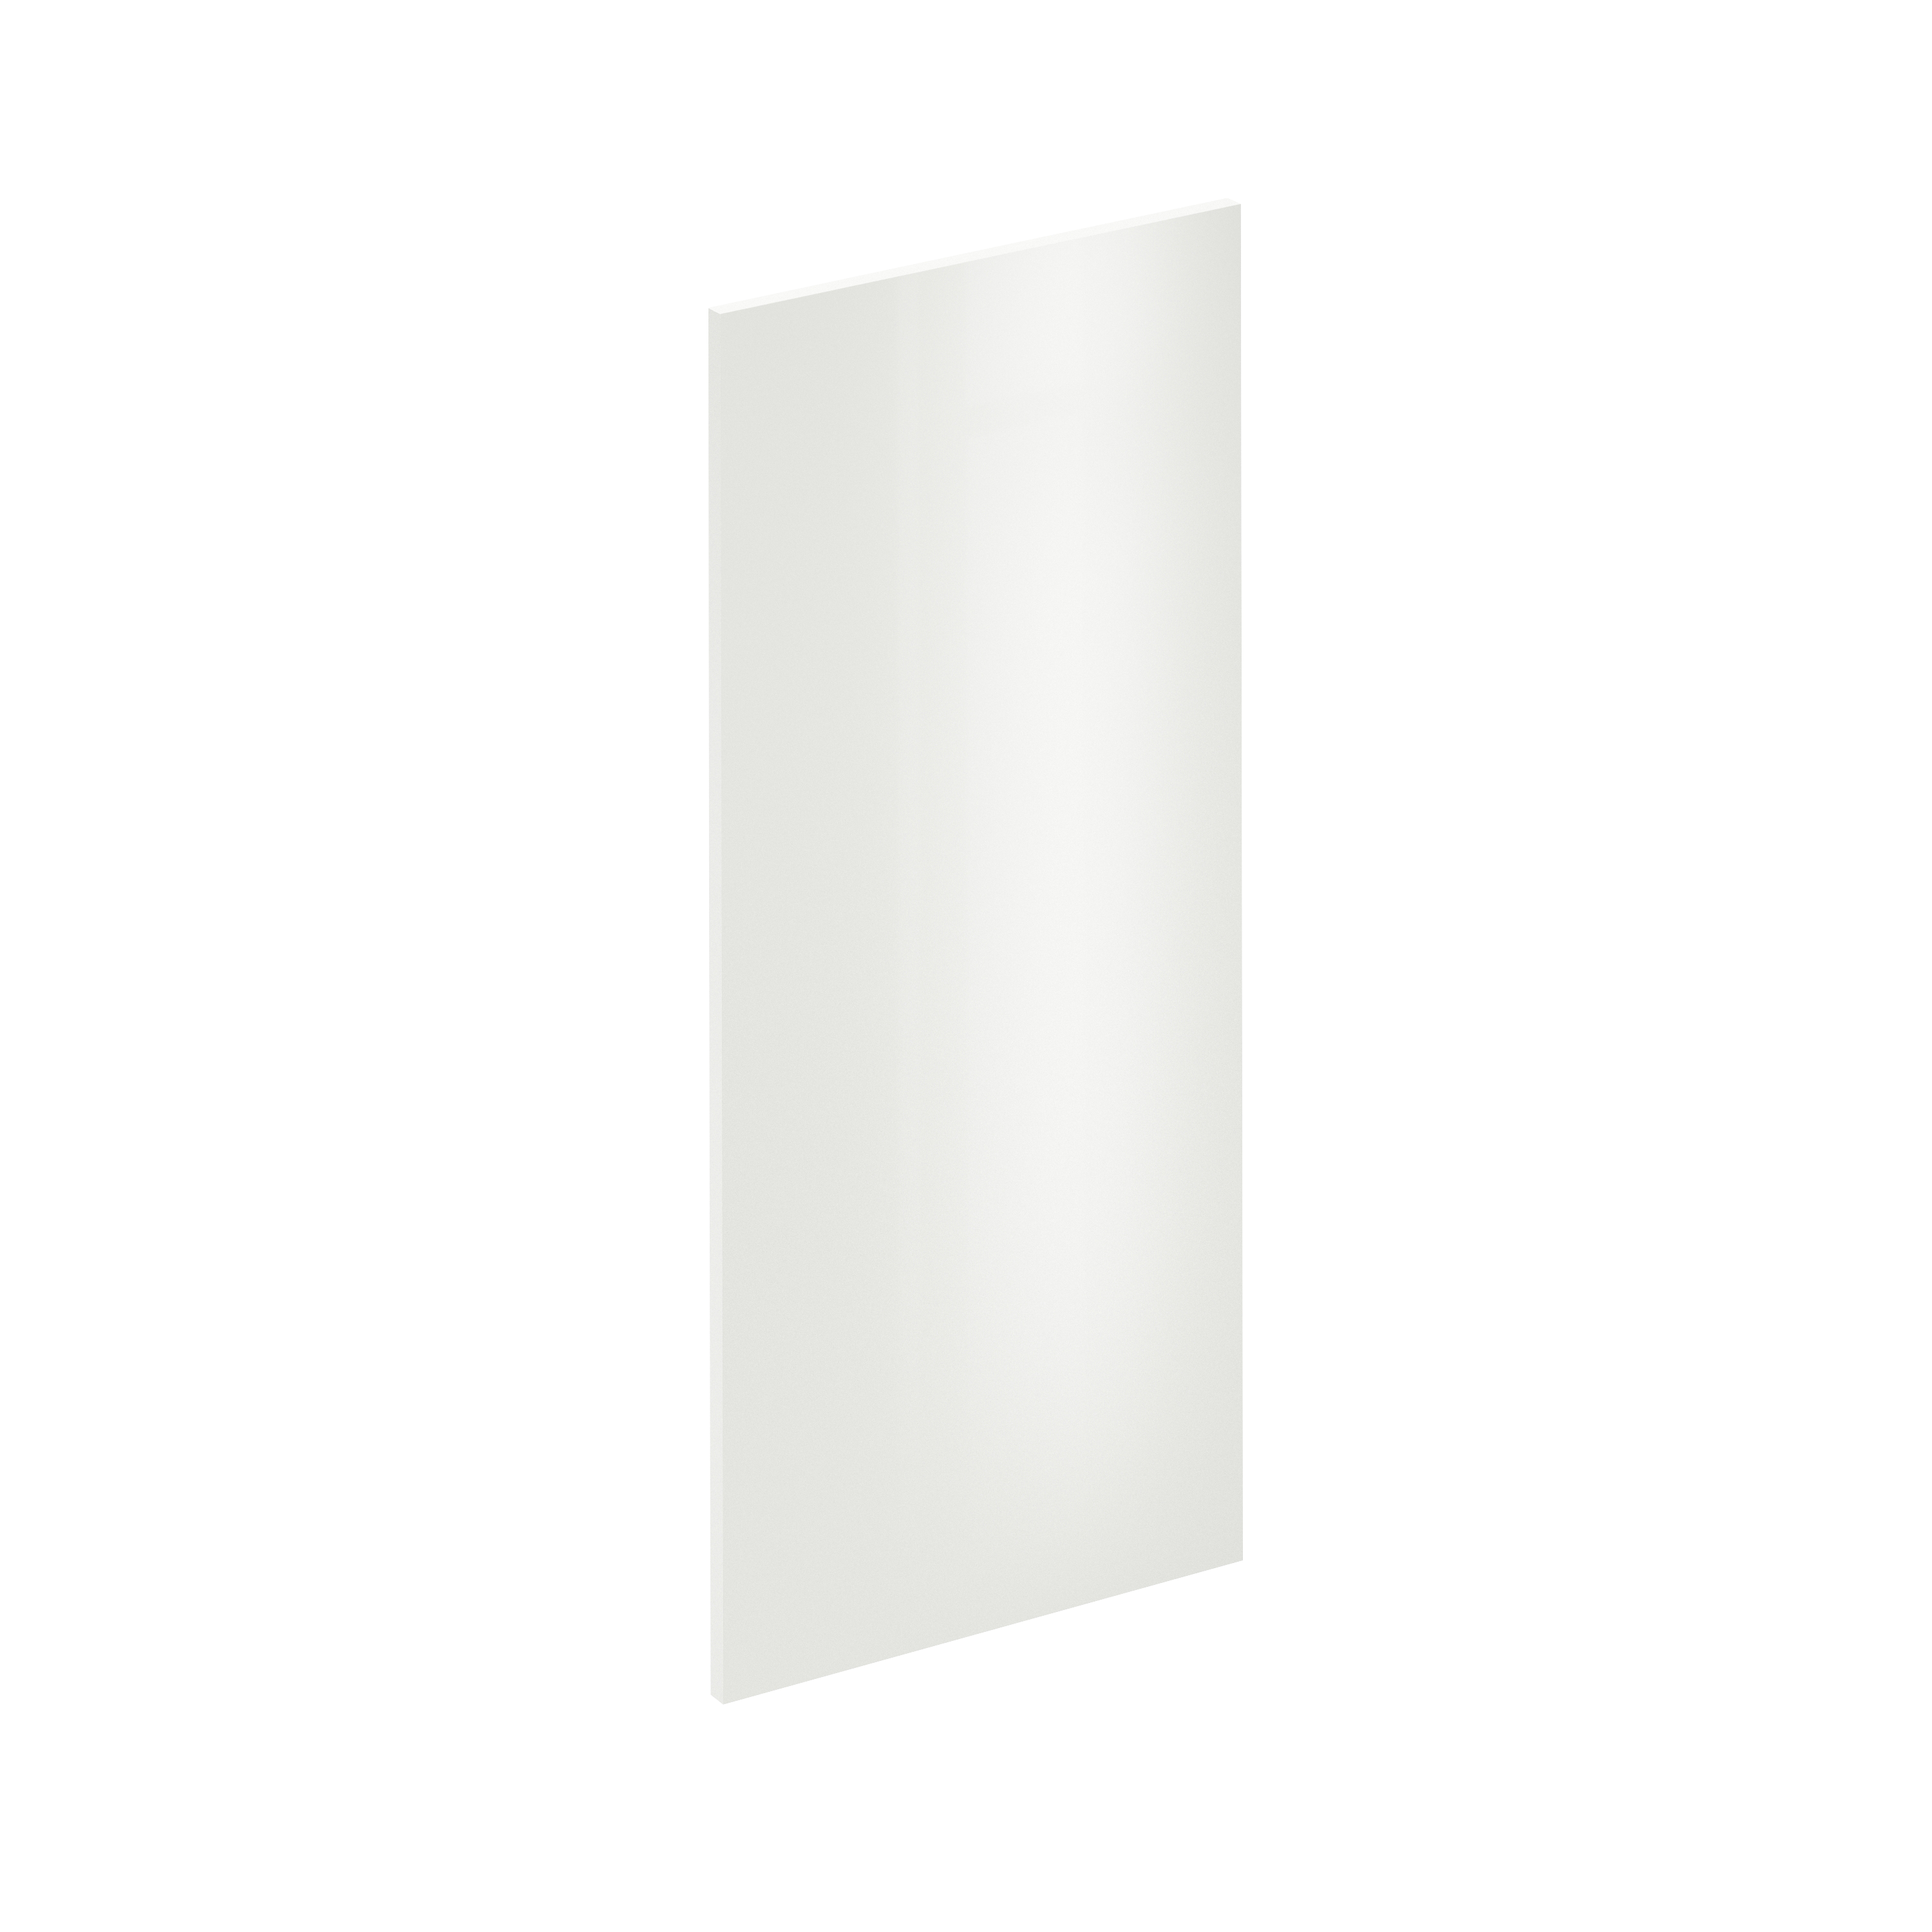 Puerta para mueble de cocina sevilla blanco brillo h 102.4 x l 45 cm